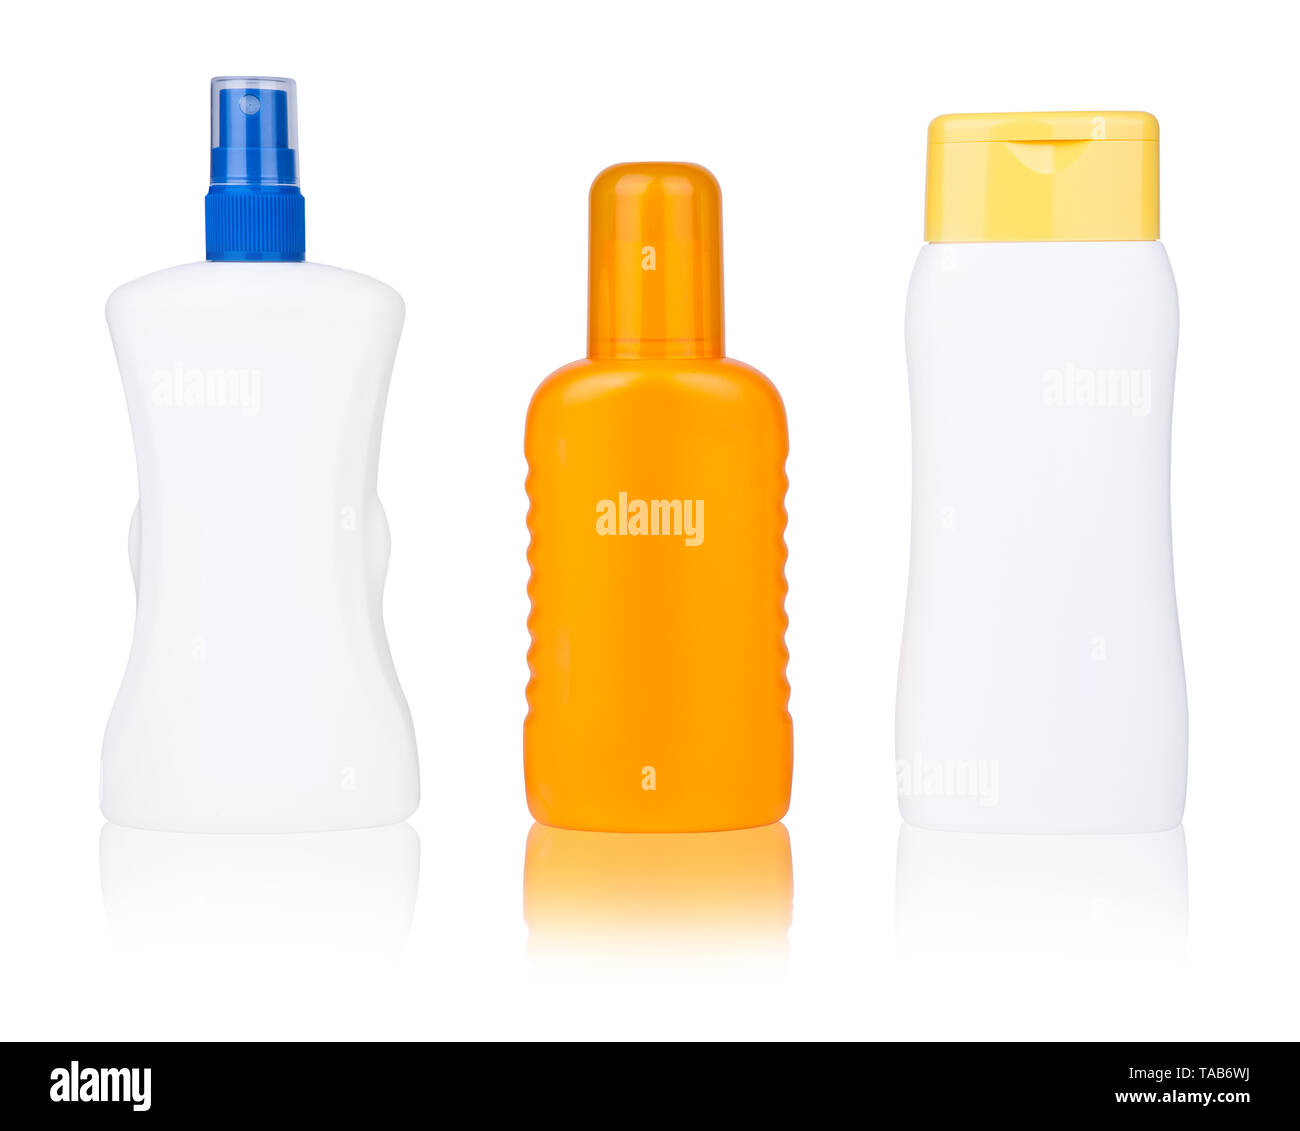 isolated sun lotion bottles Stock Photo